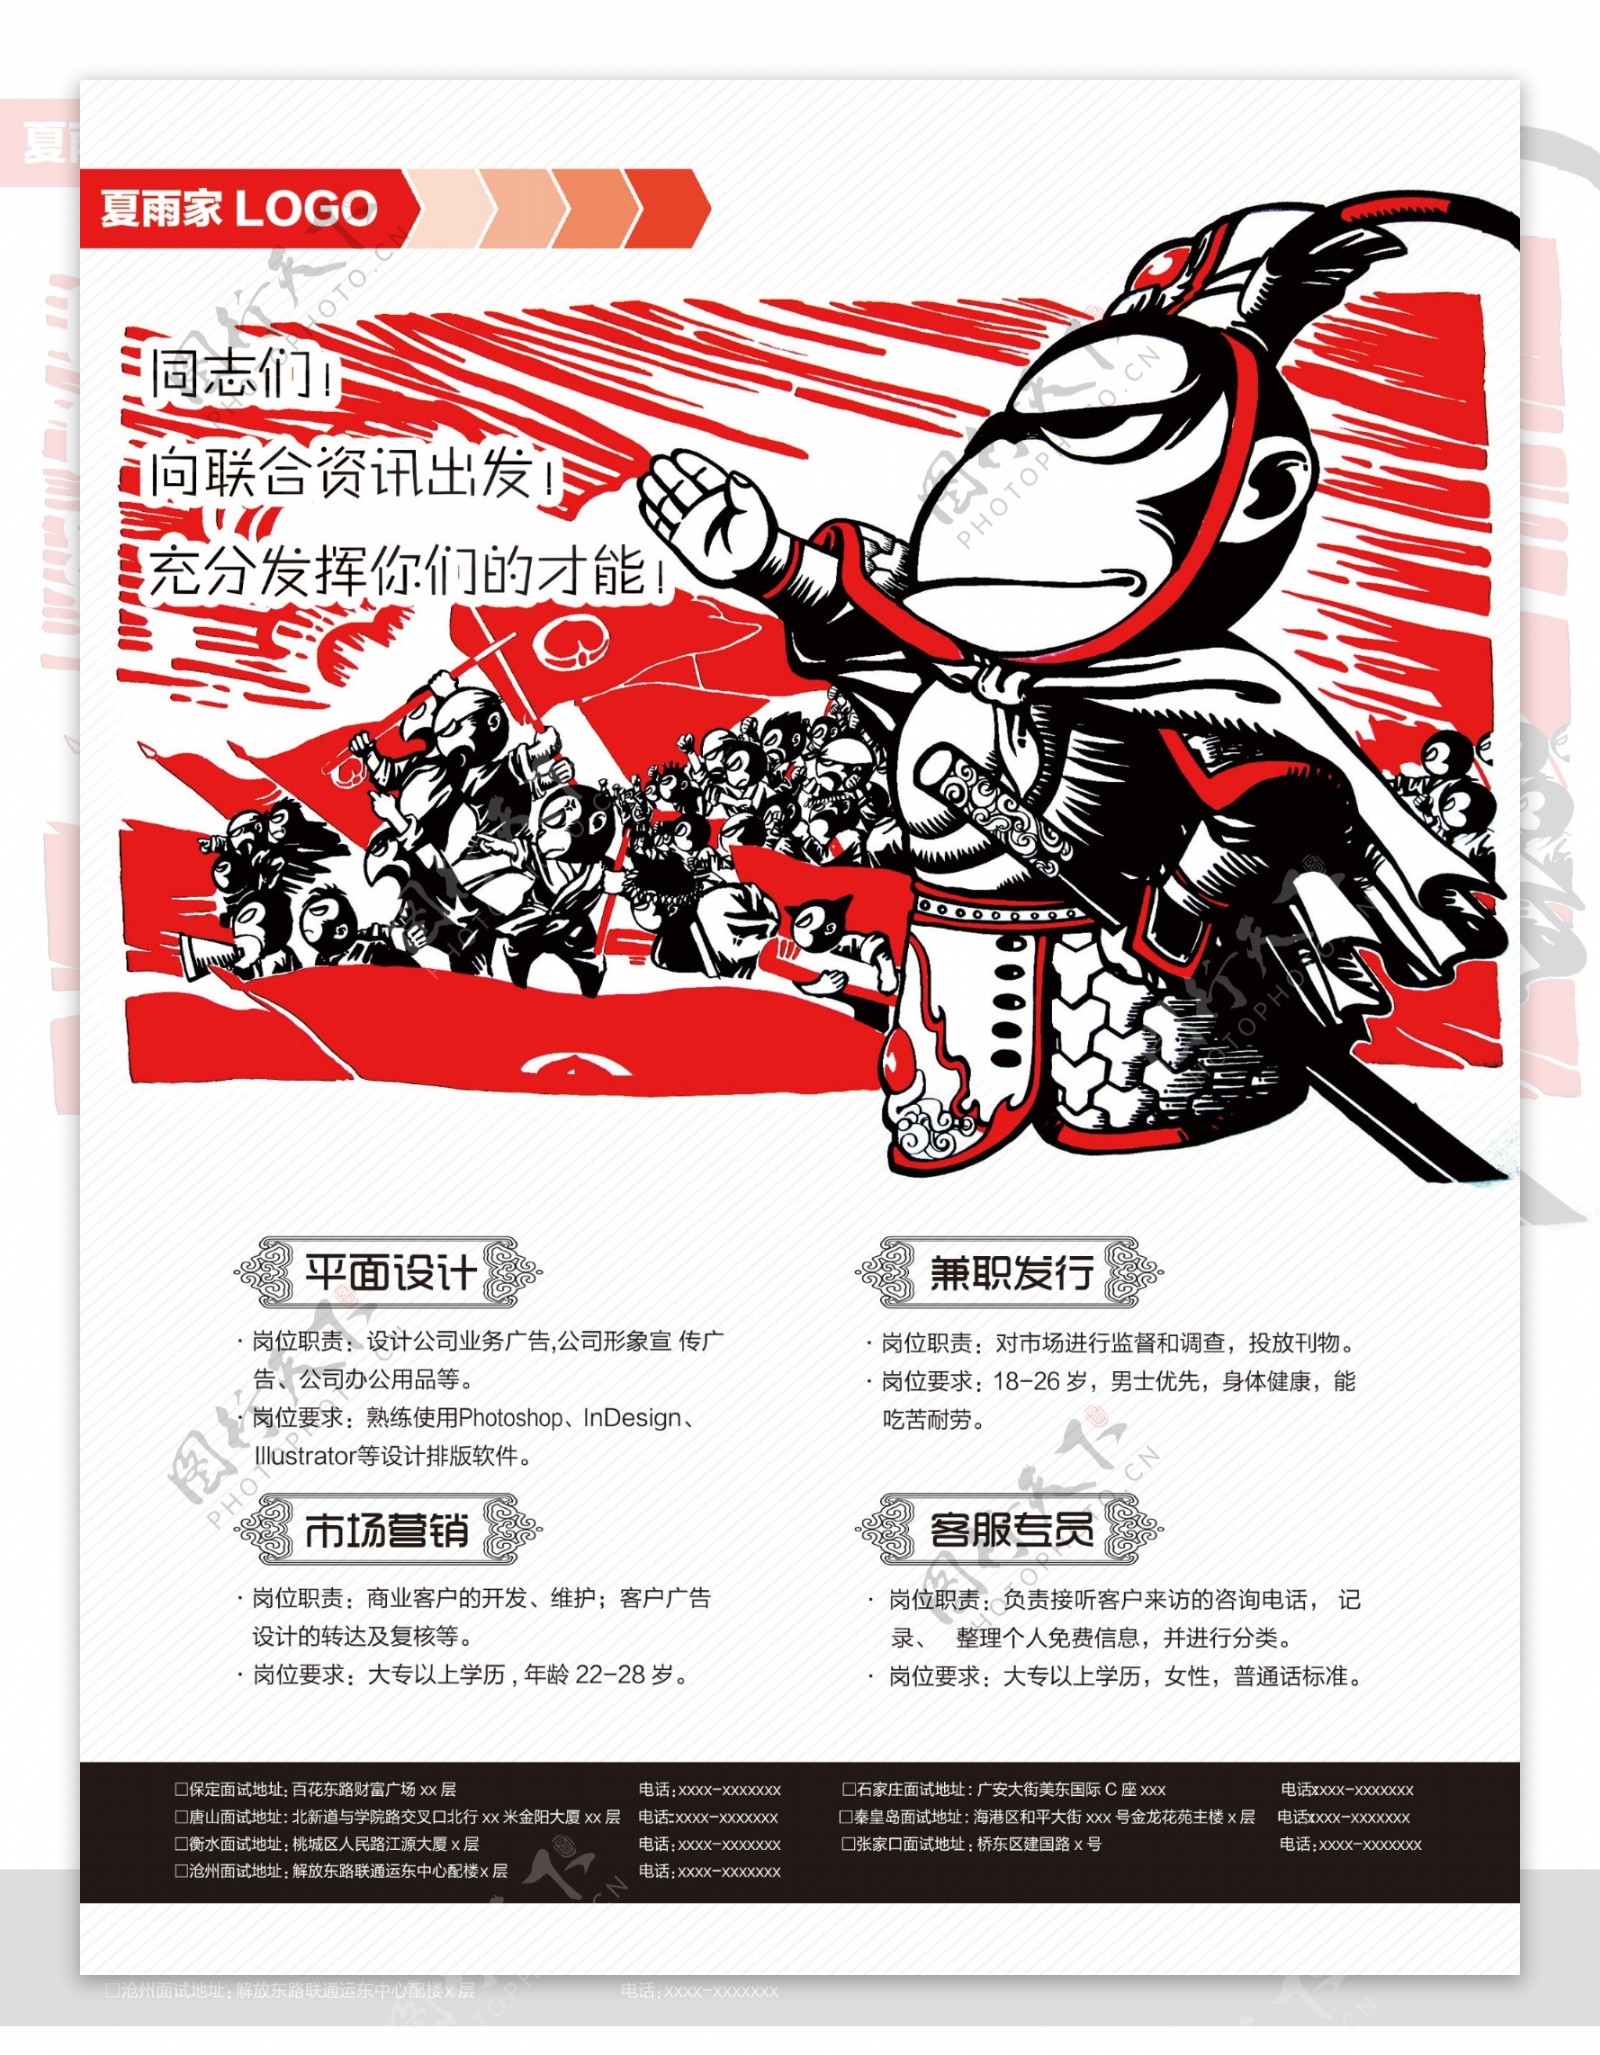 卡通美猴王企业商业公司招聘海报设计PSD